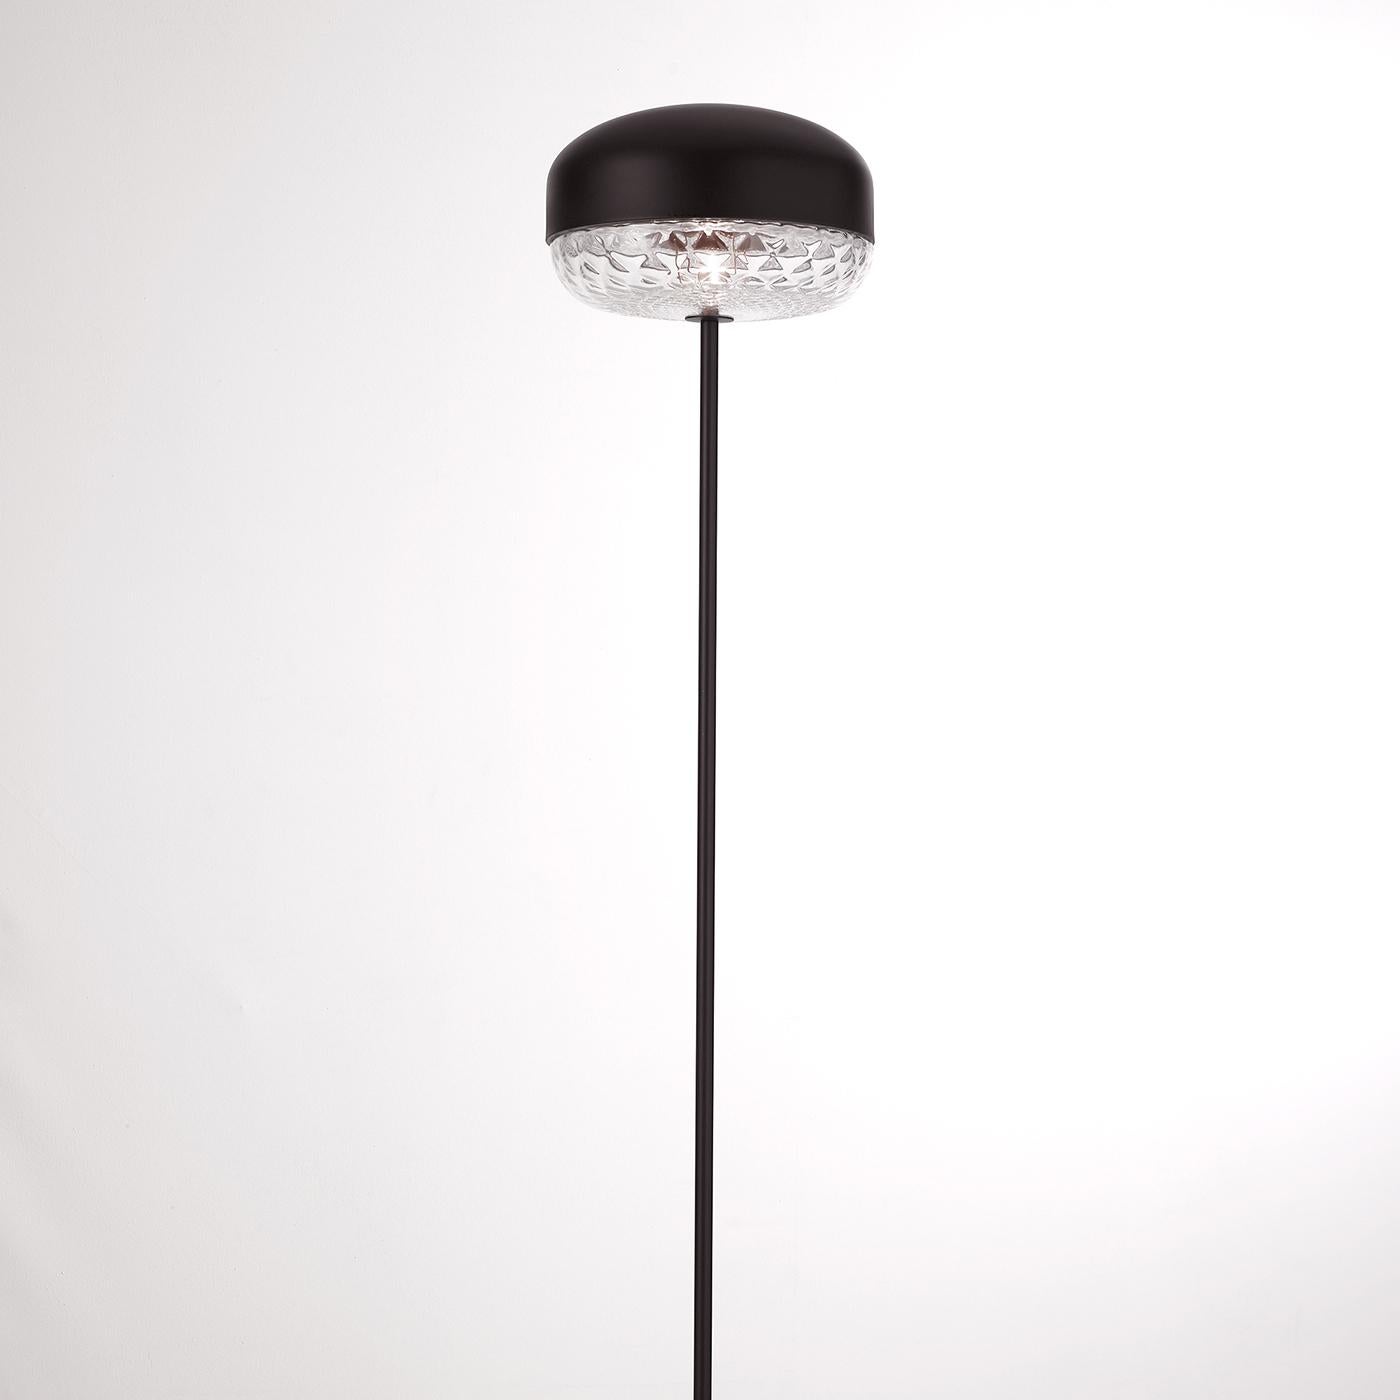 Présentant une structure métallique minimale et harmonieuse avec une finition noire mate, le lampadaire Balloton transmet un glamour résolument moderne avec un accent de tradition antique. Une tige noire et élancée s'élève d'une base circulaire qui